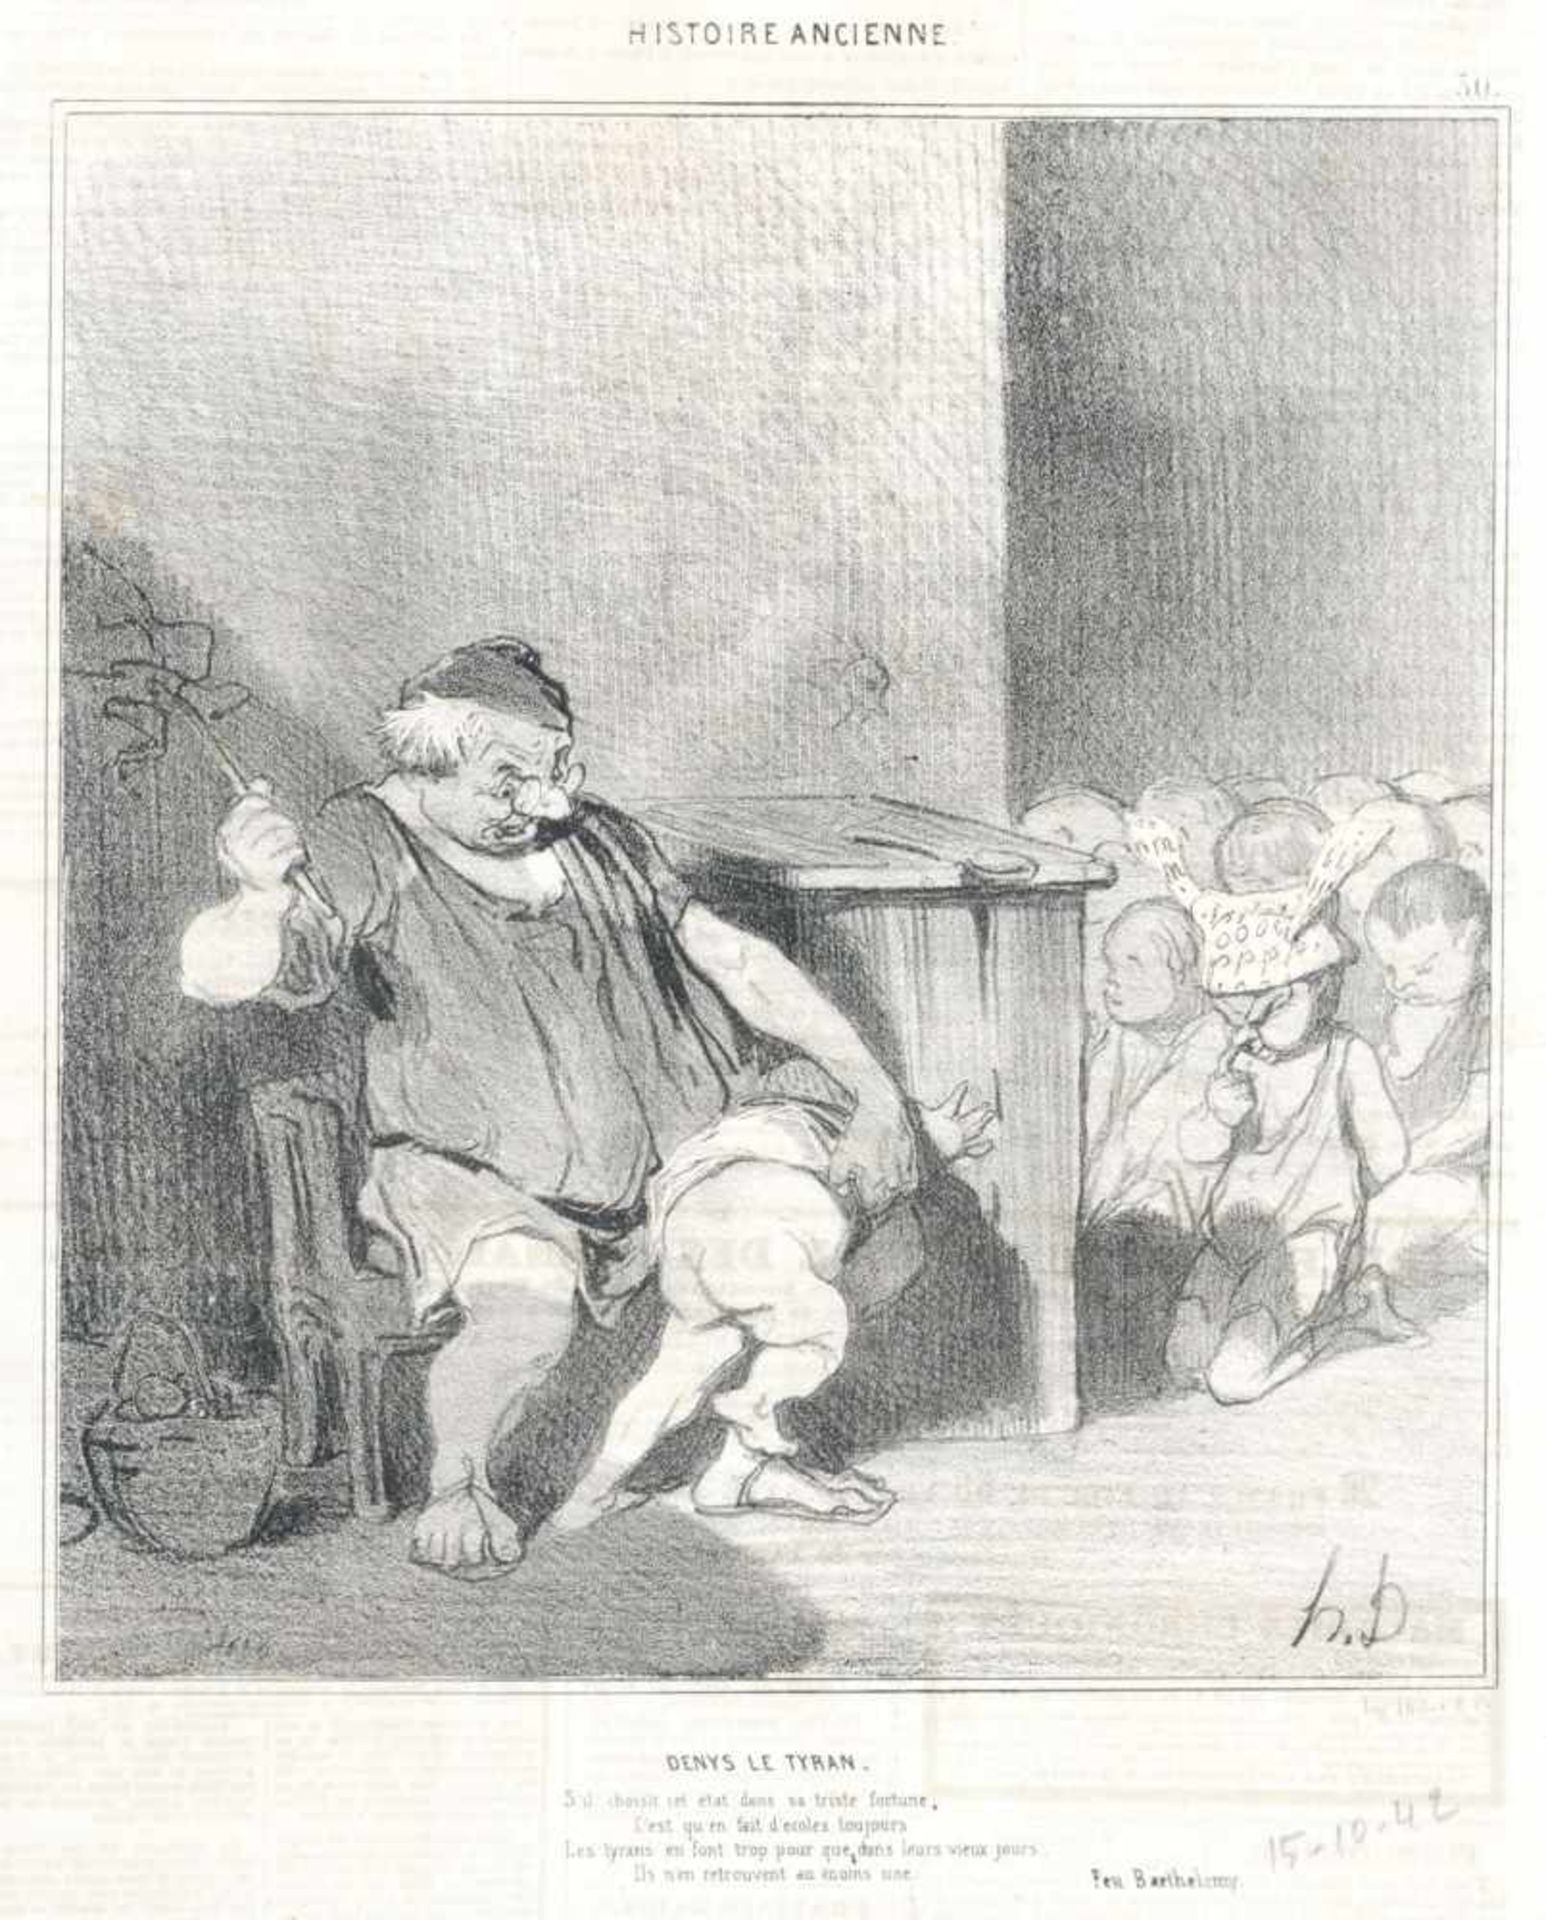 Honoré Daumier, Elf Illustrationen aus der Satire-Zeitschrift "Le Charivari". 2. H. 19. Jh.Honoré